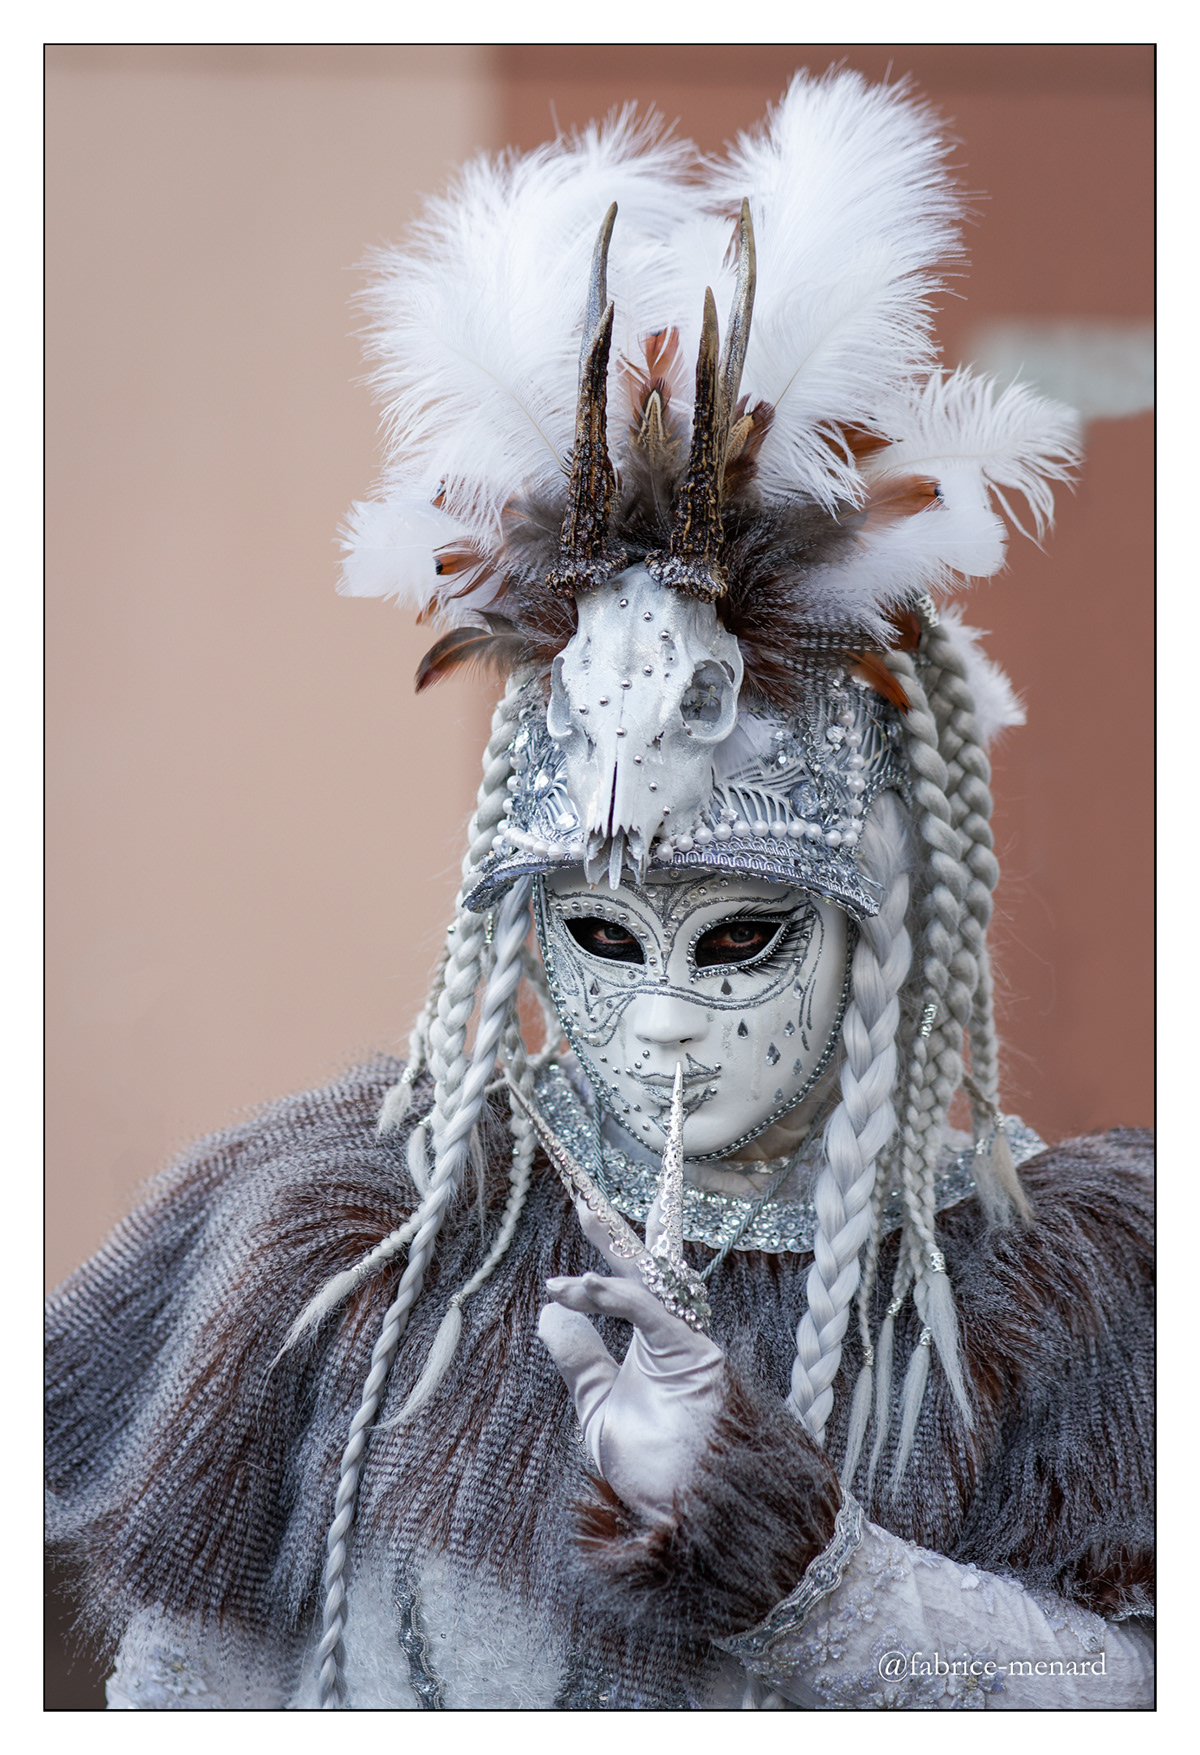 Carnaval Masque Masques loup portrait costume costumes Carnaval vénitien fête de rue remiremont